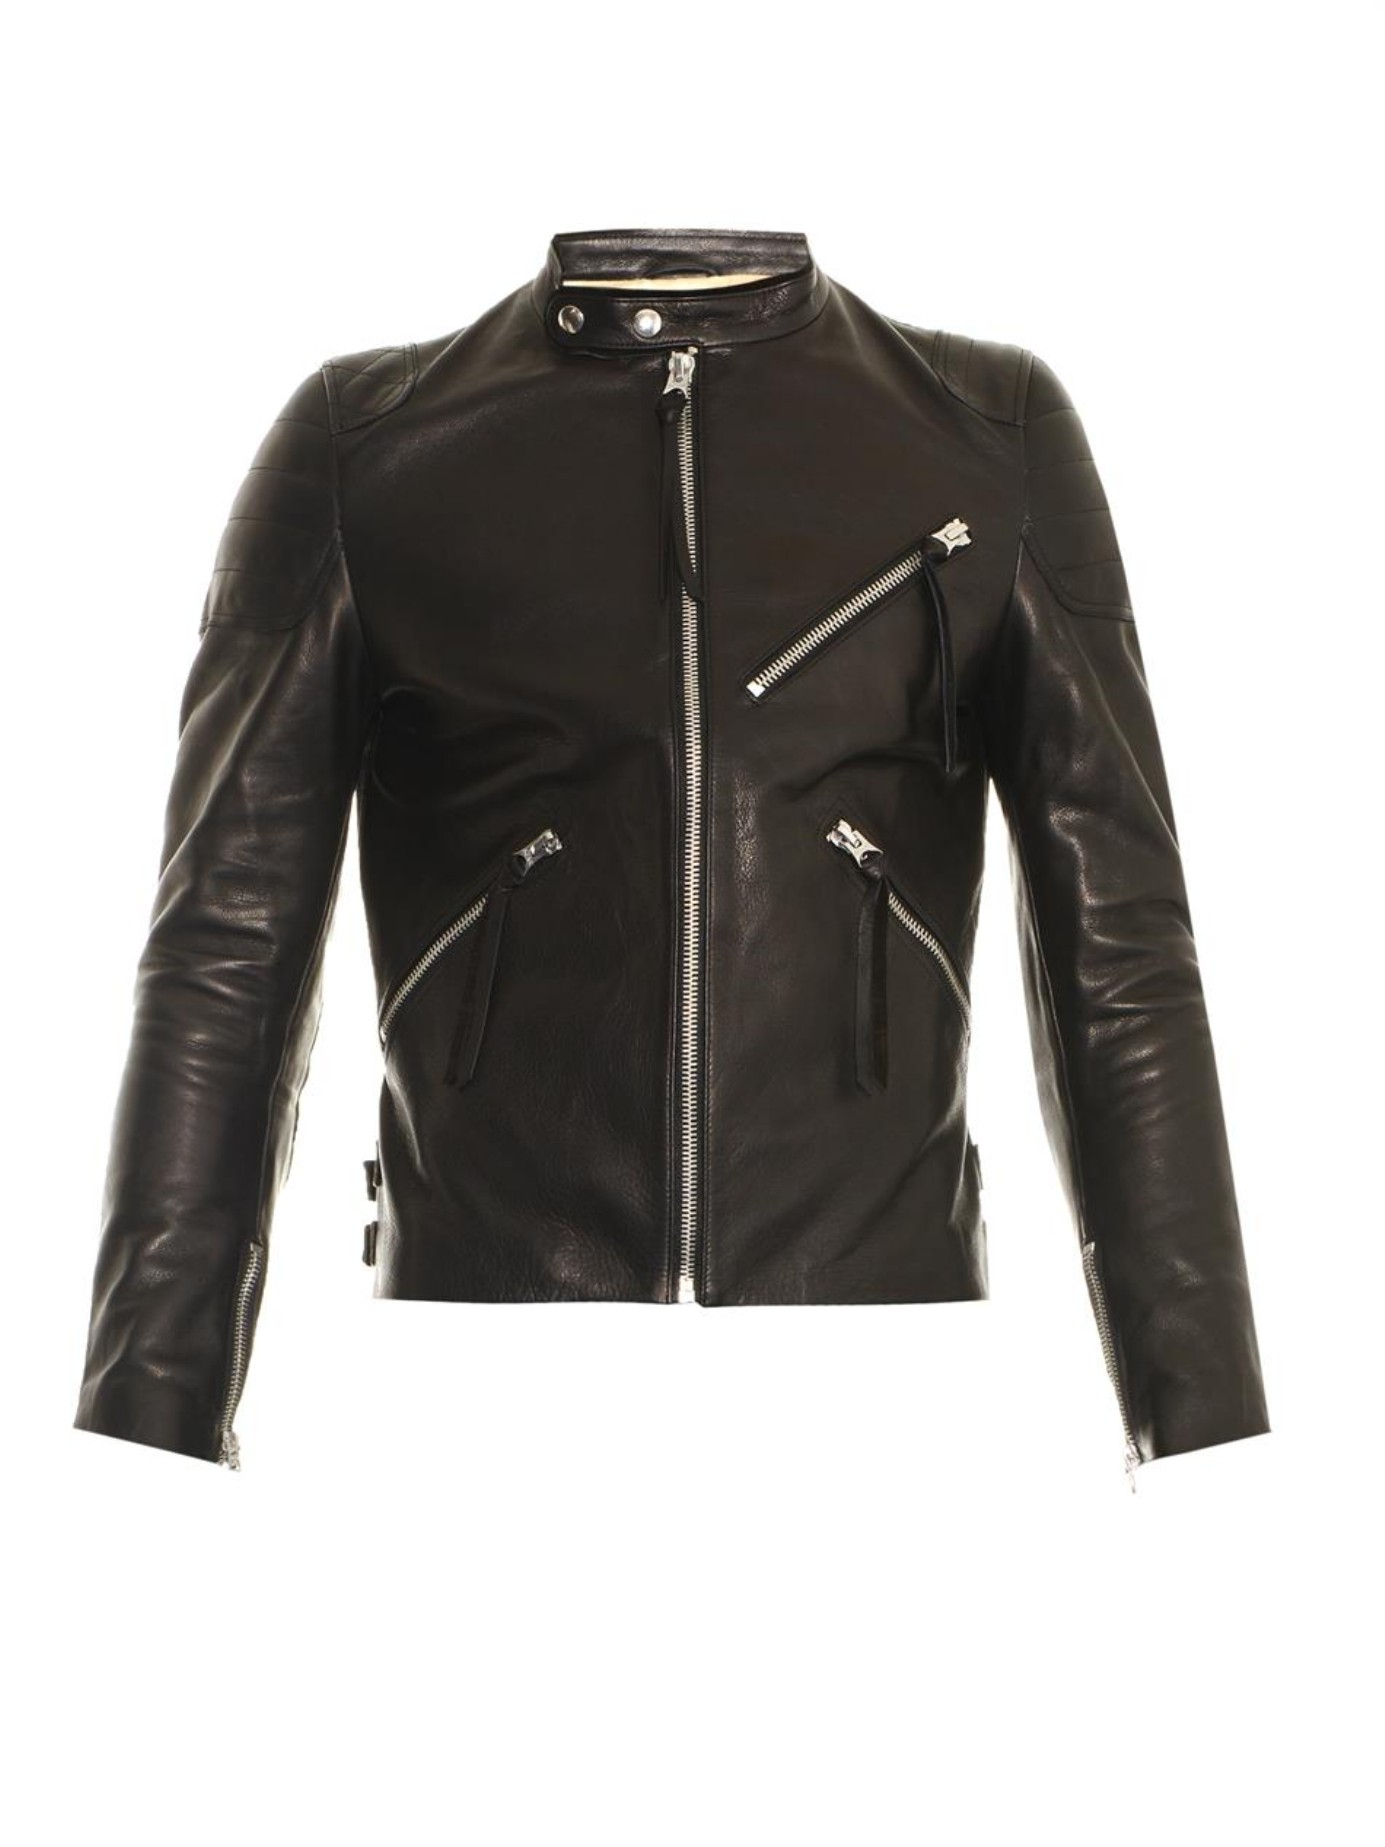 Acne Studios Oliver Leather Jacket in Black for Men | Lyst